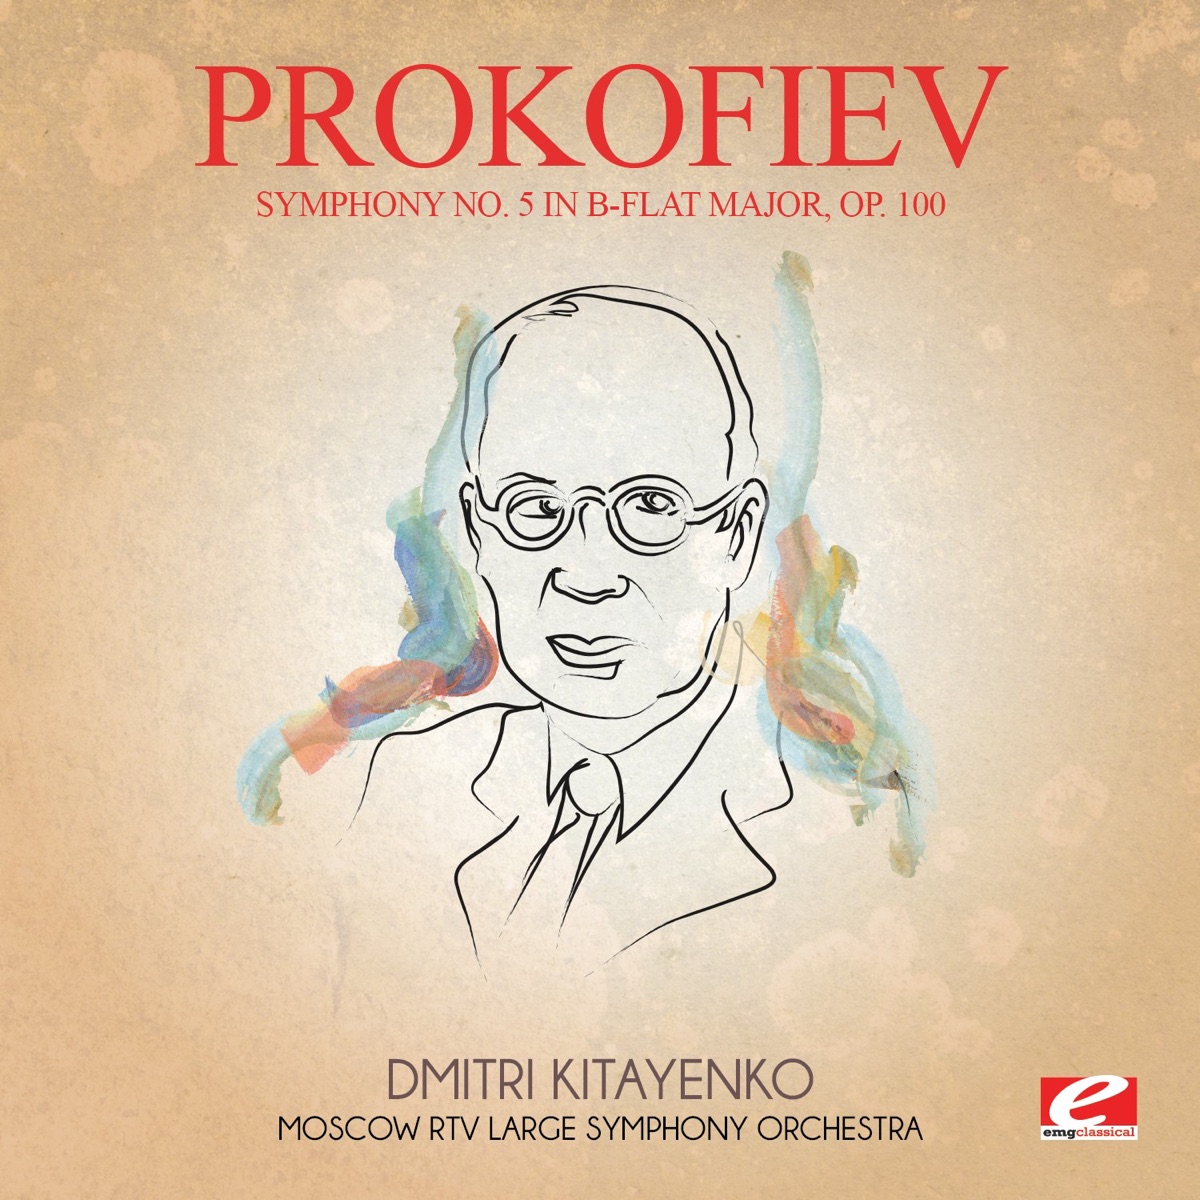 Prokofiev: Cinderella (Complete Ballet) - Album by Moscow RTV 